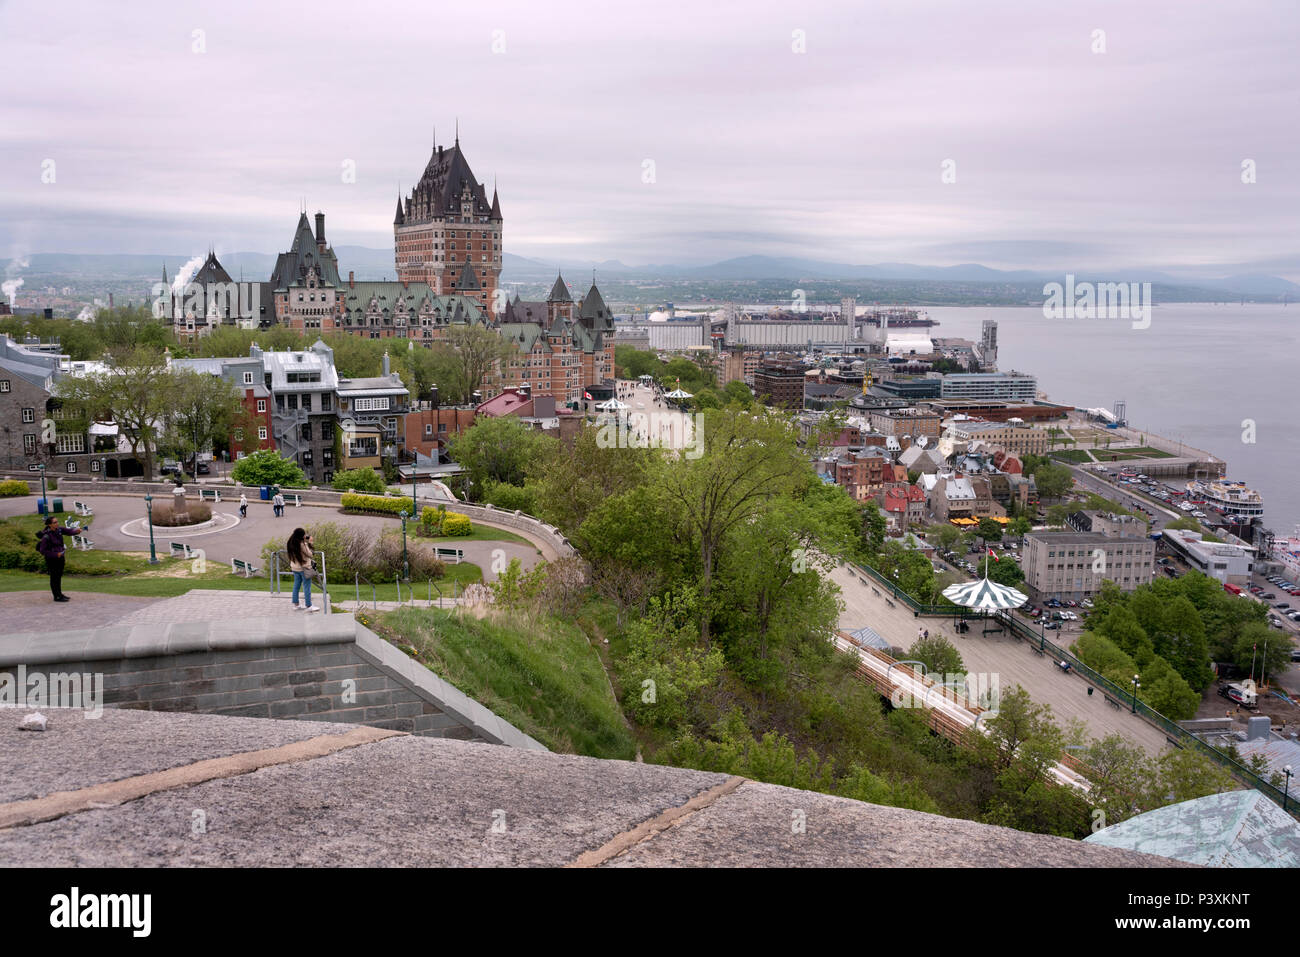 Ein Blick auf die Altstadt von Quebec, Kanada, von der Citadelle, die das Chateau Frontenac (Mitte) und der St. Lawrence River Stockfoto